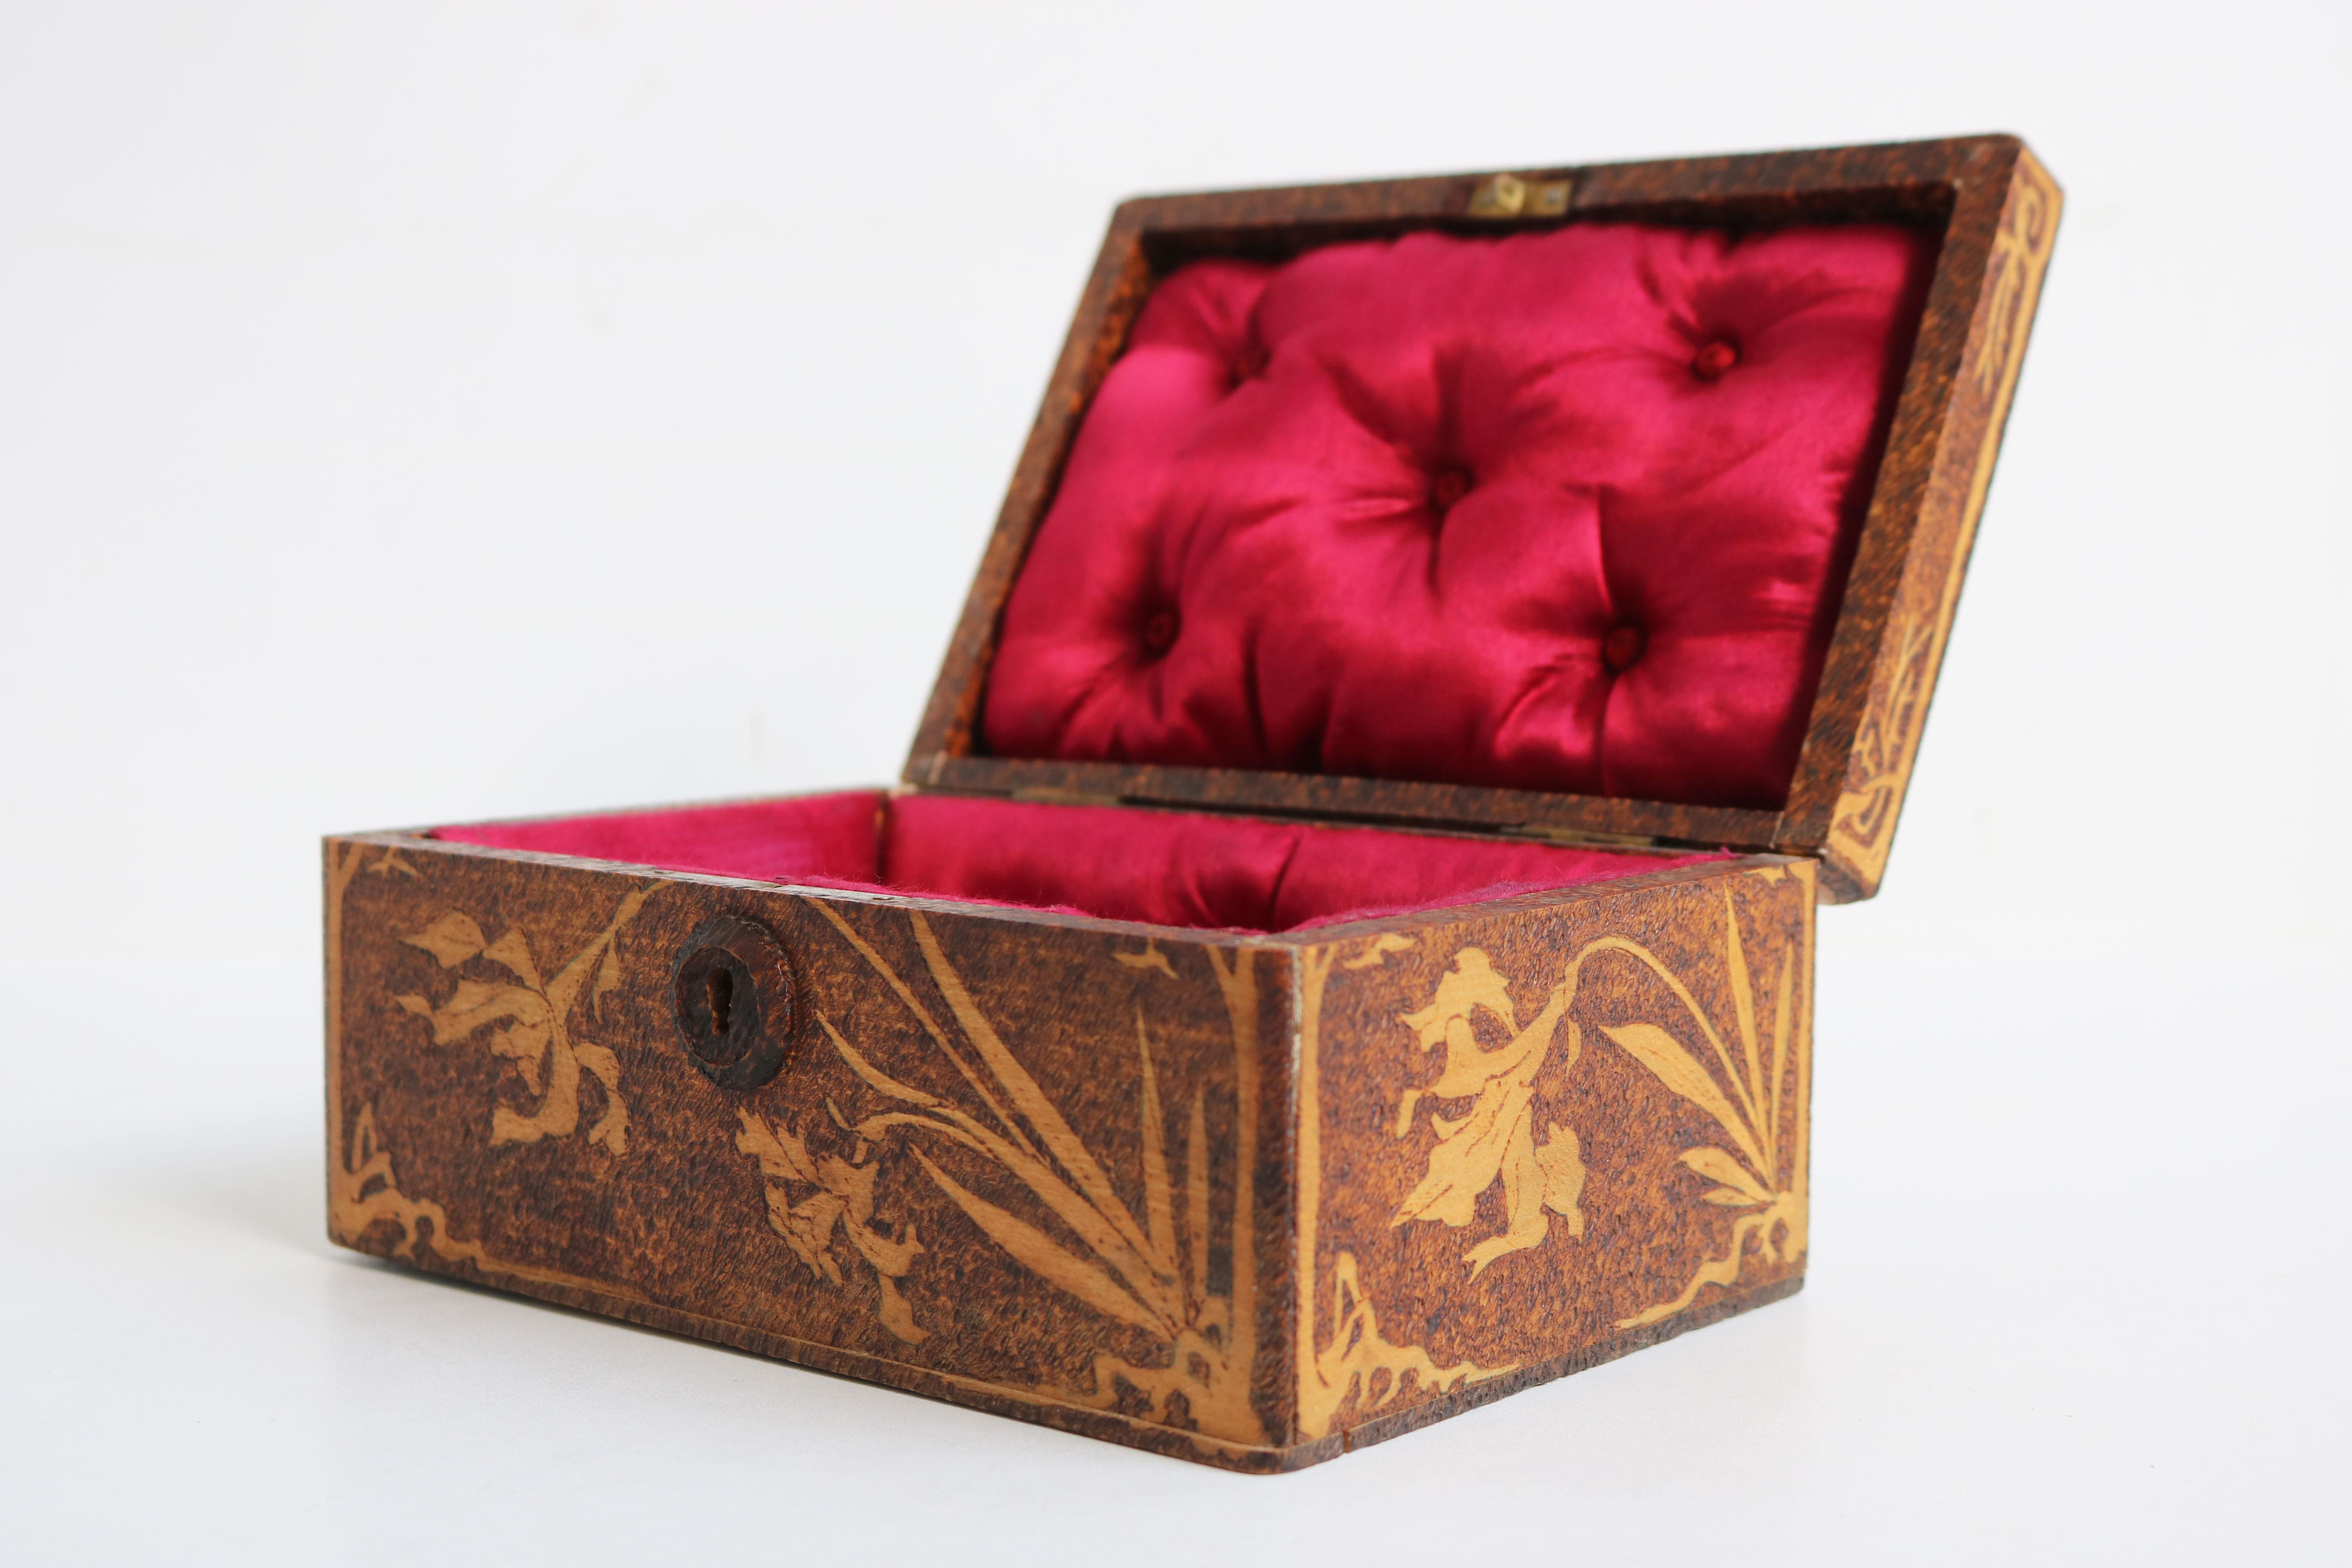 Antique French Art Nouveau Jewelry Box 1906 Carved Wood Floral Jugendstil Velvet 3